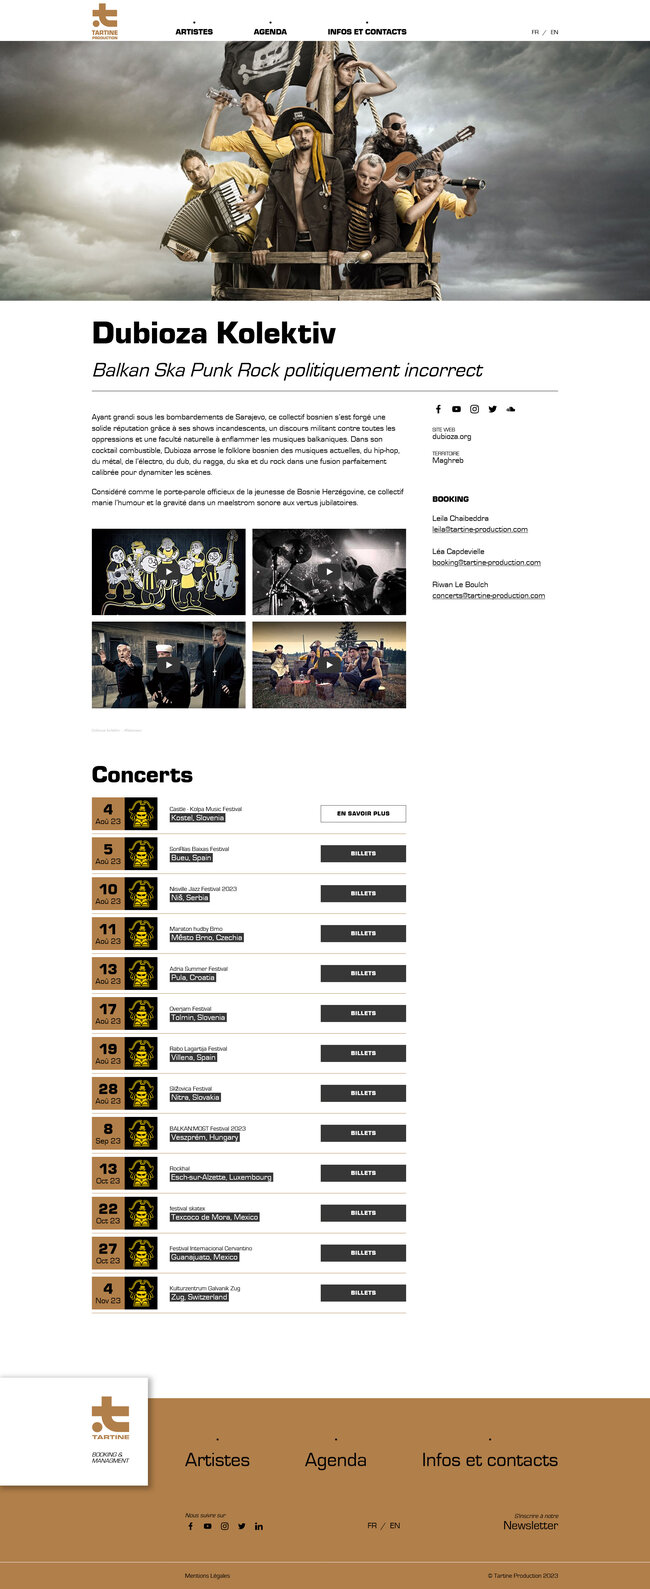 Page de présentation des artistes avec clips, contacts booking et liste des dates de concerts